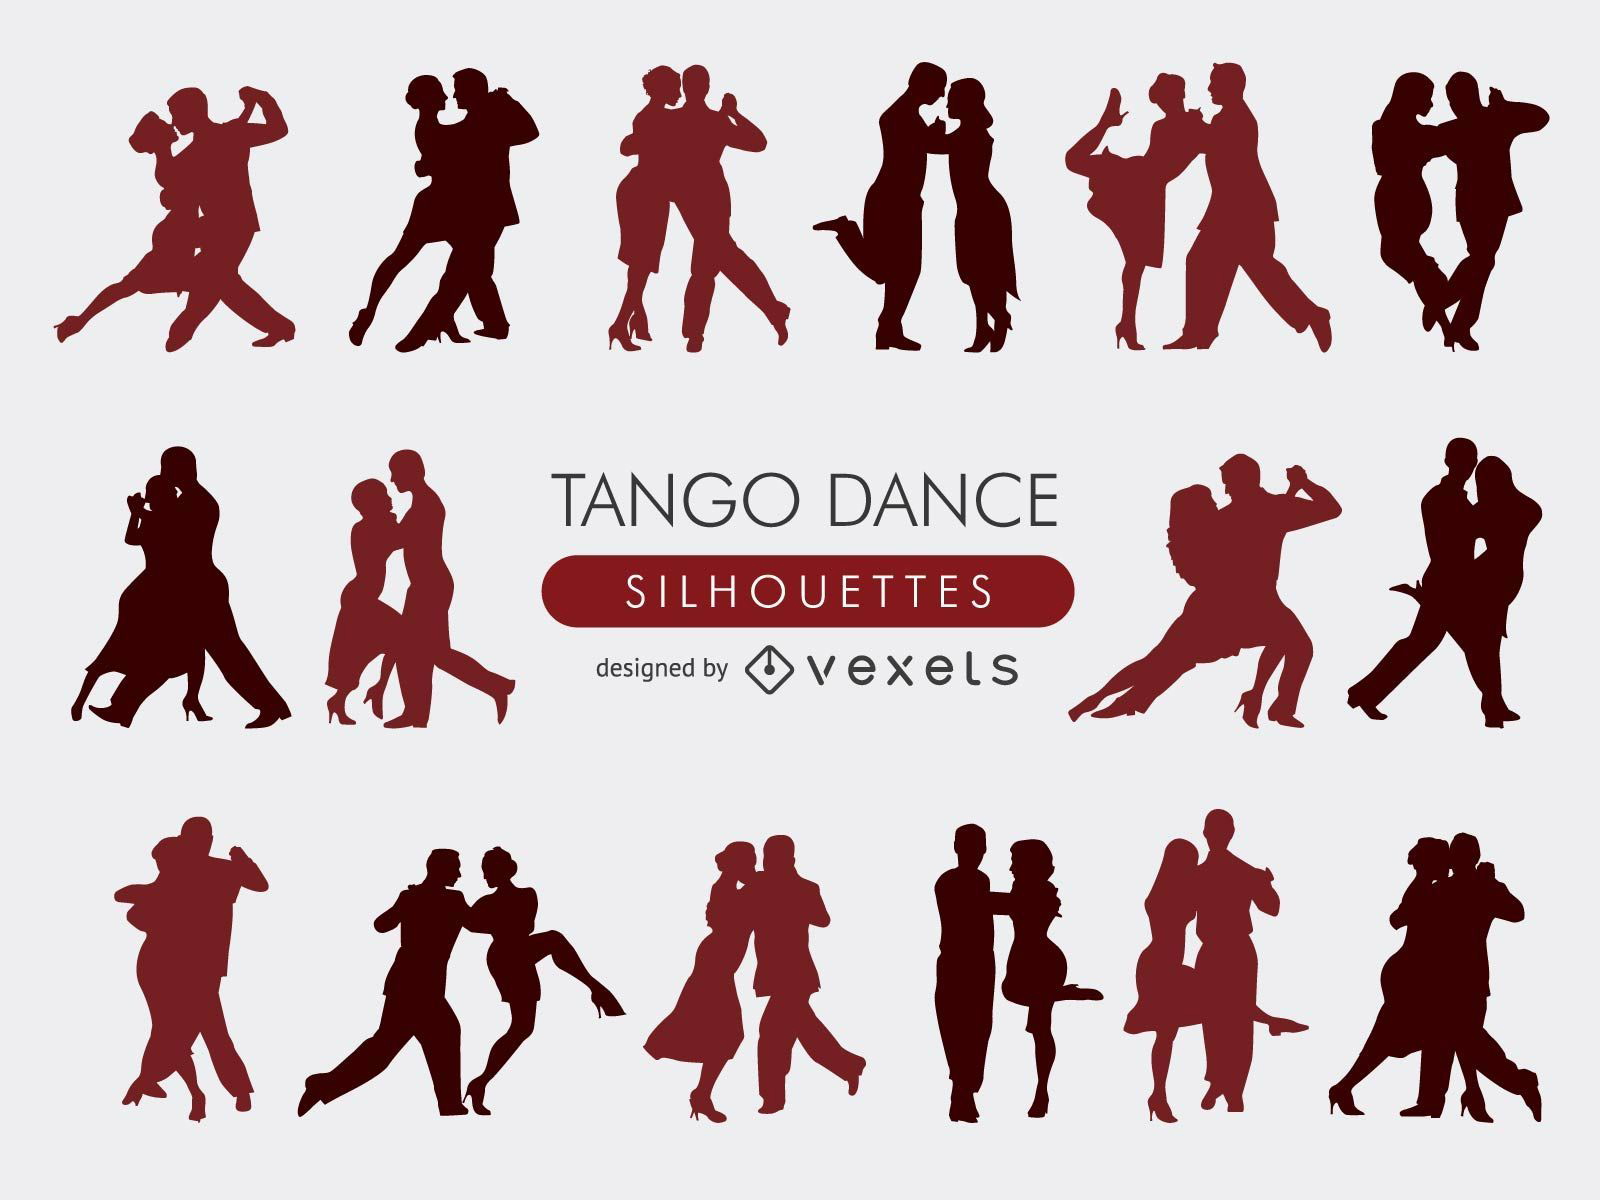 Colecci?n de siluetas de tango